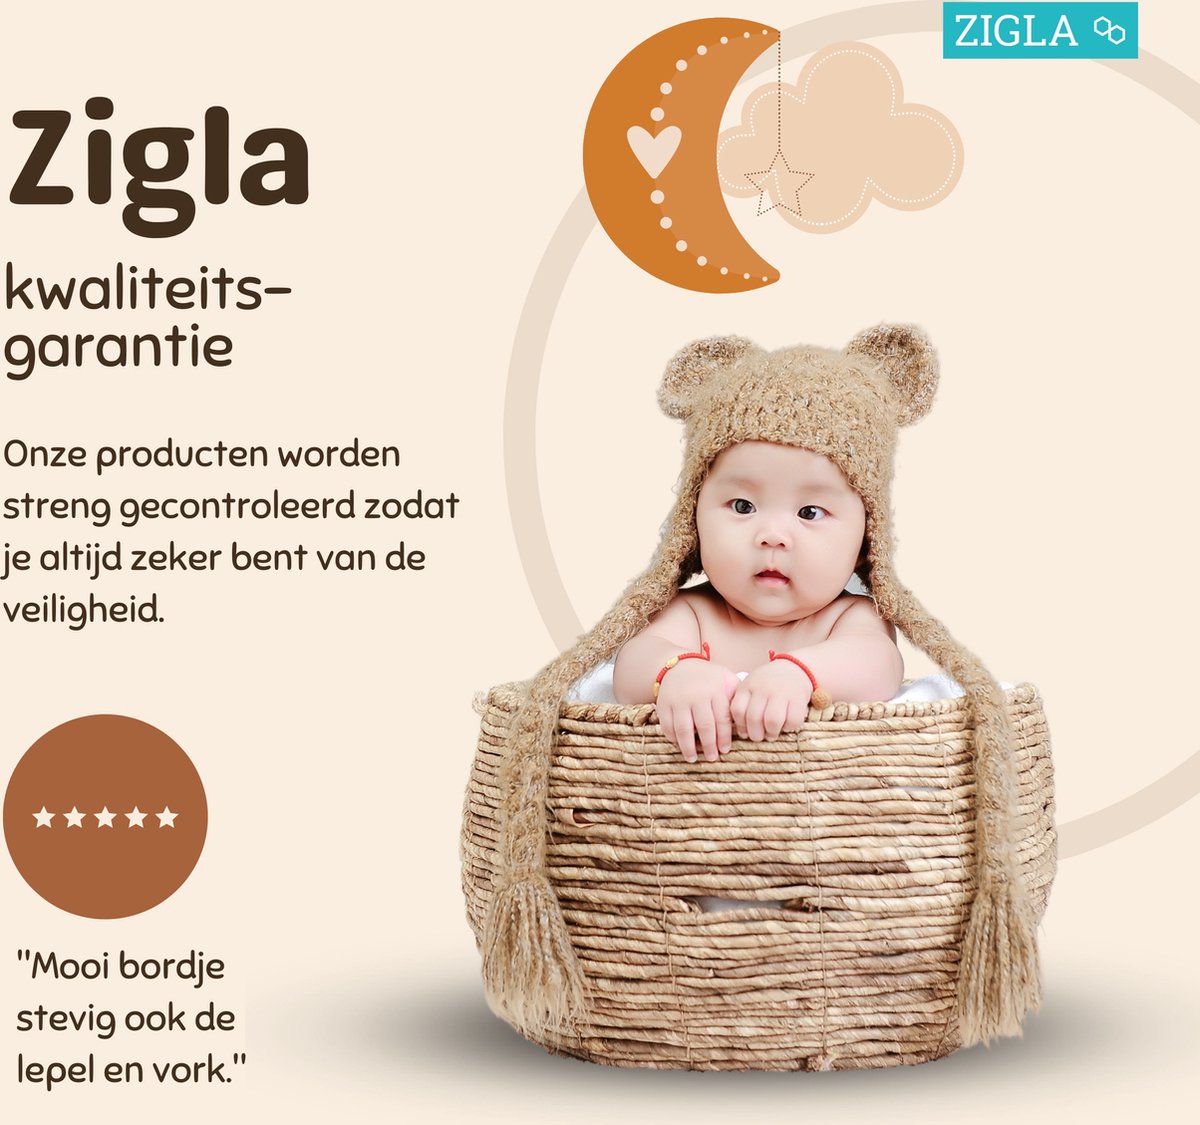 Zigla - Couverts Couverts pour enfants - Couverts Bébé - Services de table  Bébé 